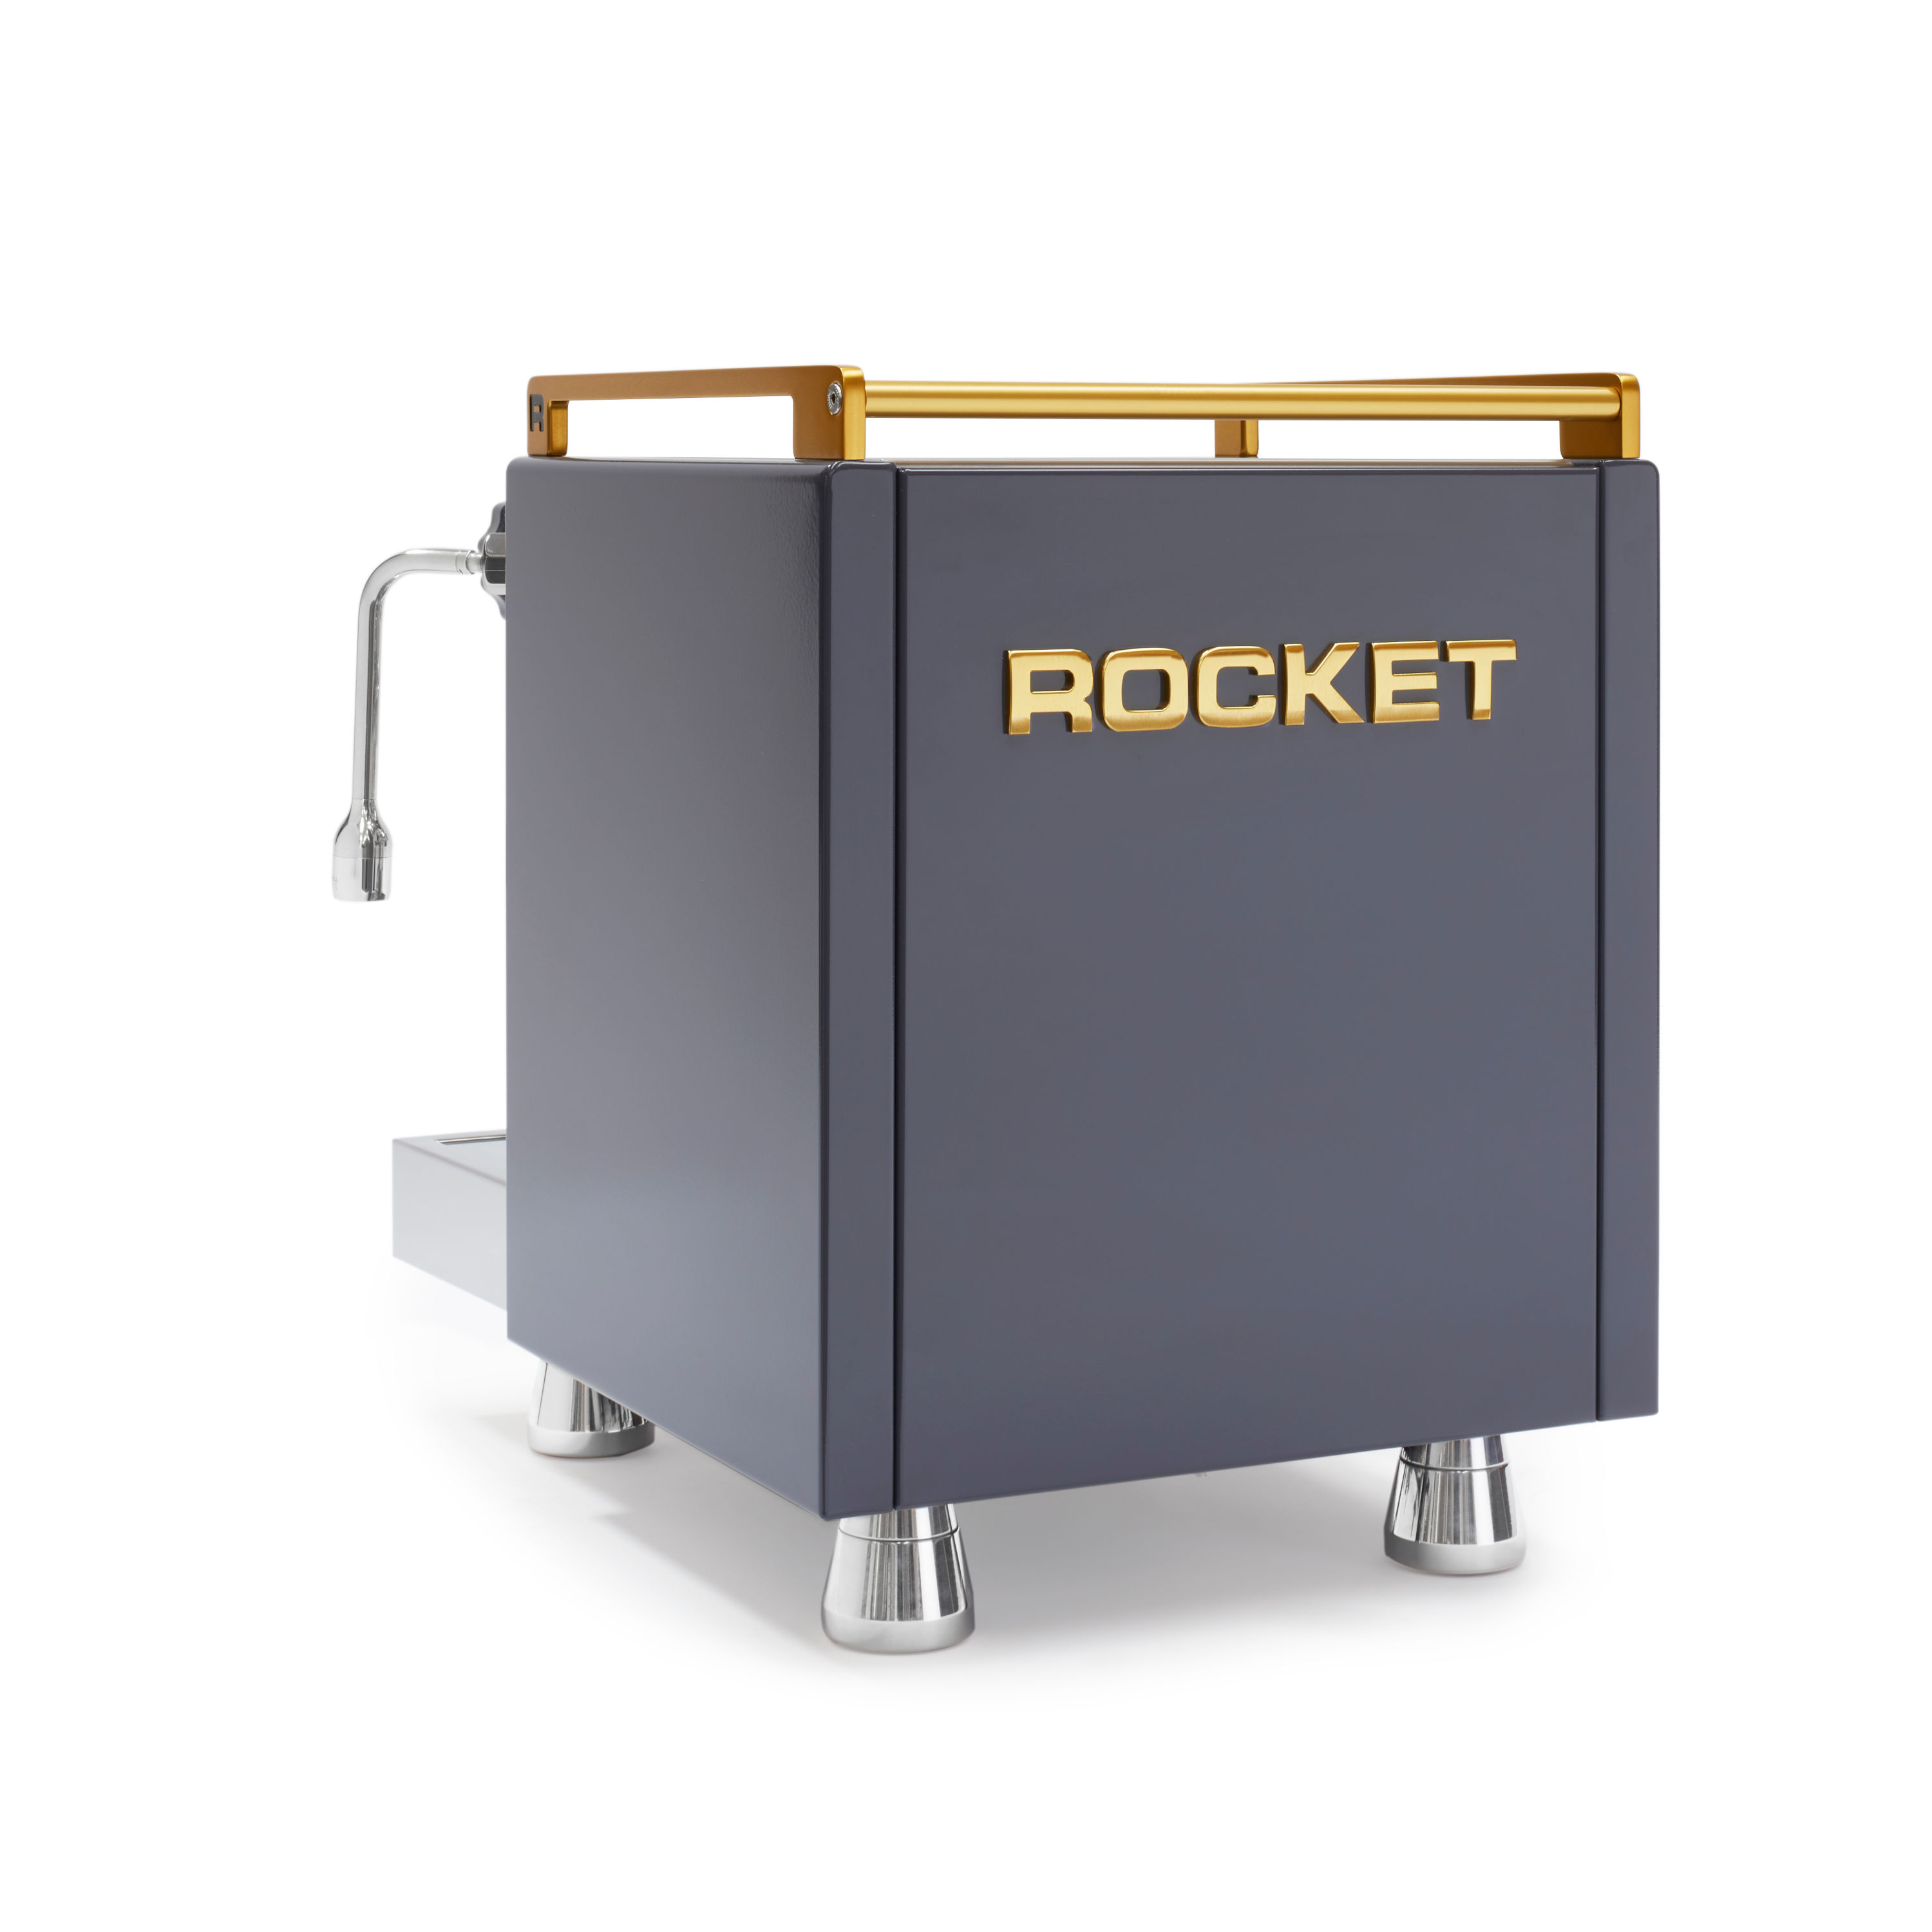 Rocket R58 Cinquantotto Serie Grigia RAL 7015 Rückwärtig